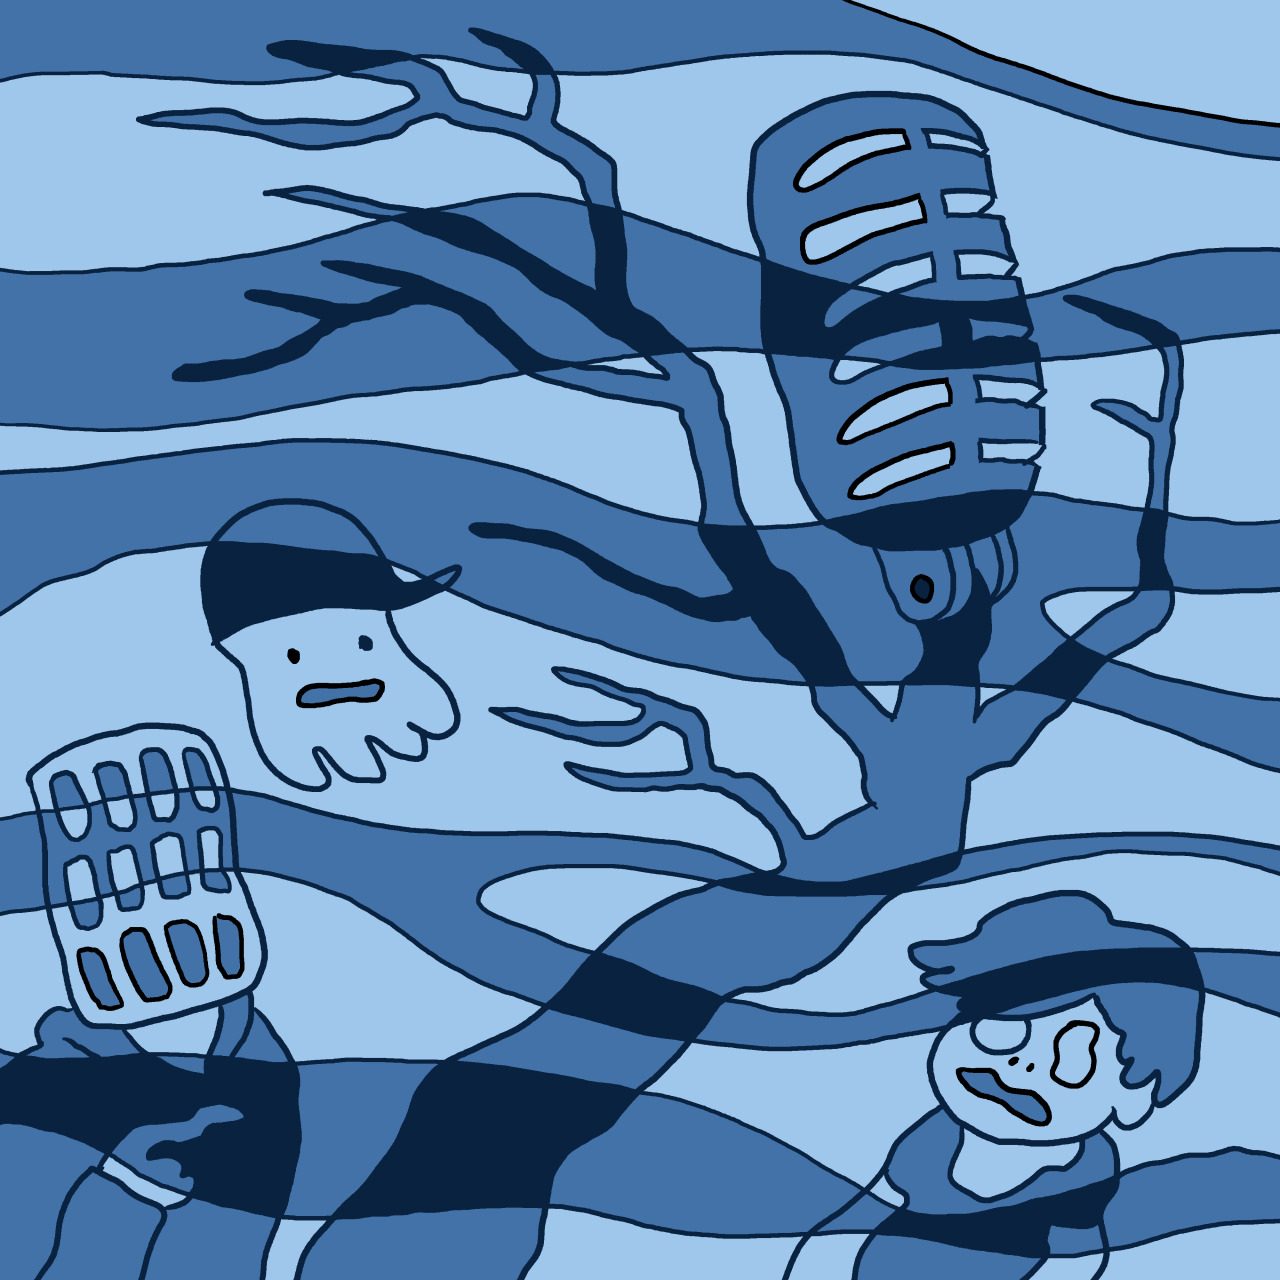 Eine selbst gezeichnete Version des Original-Covers von Folge 2 "Der Phantomsee". Marcus, Tim und Jeff sind als Schemen in einem blauen Nebel zu erkennen.